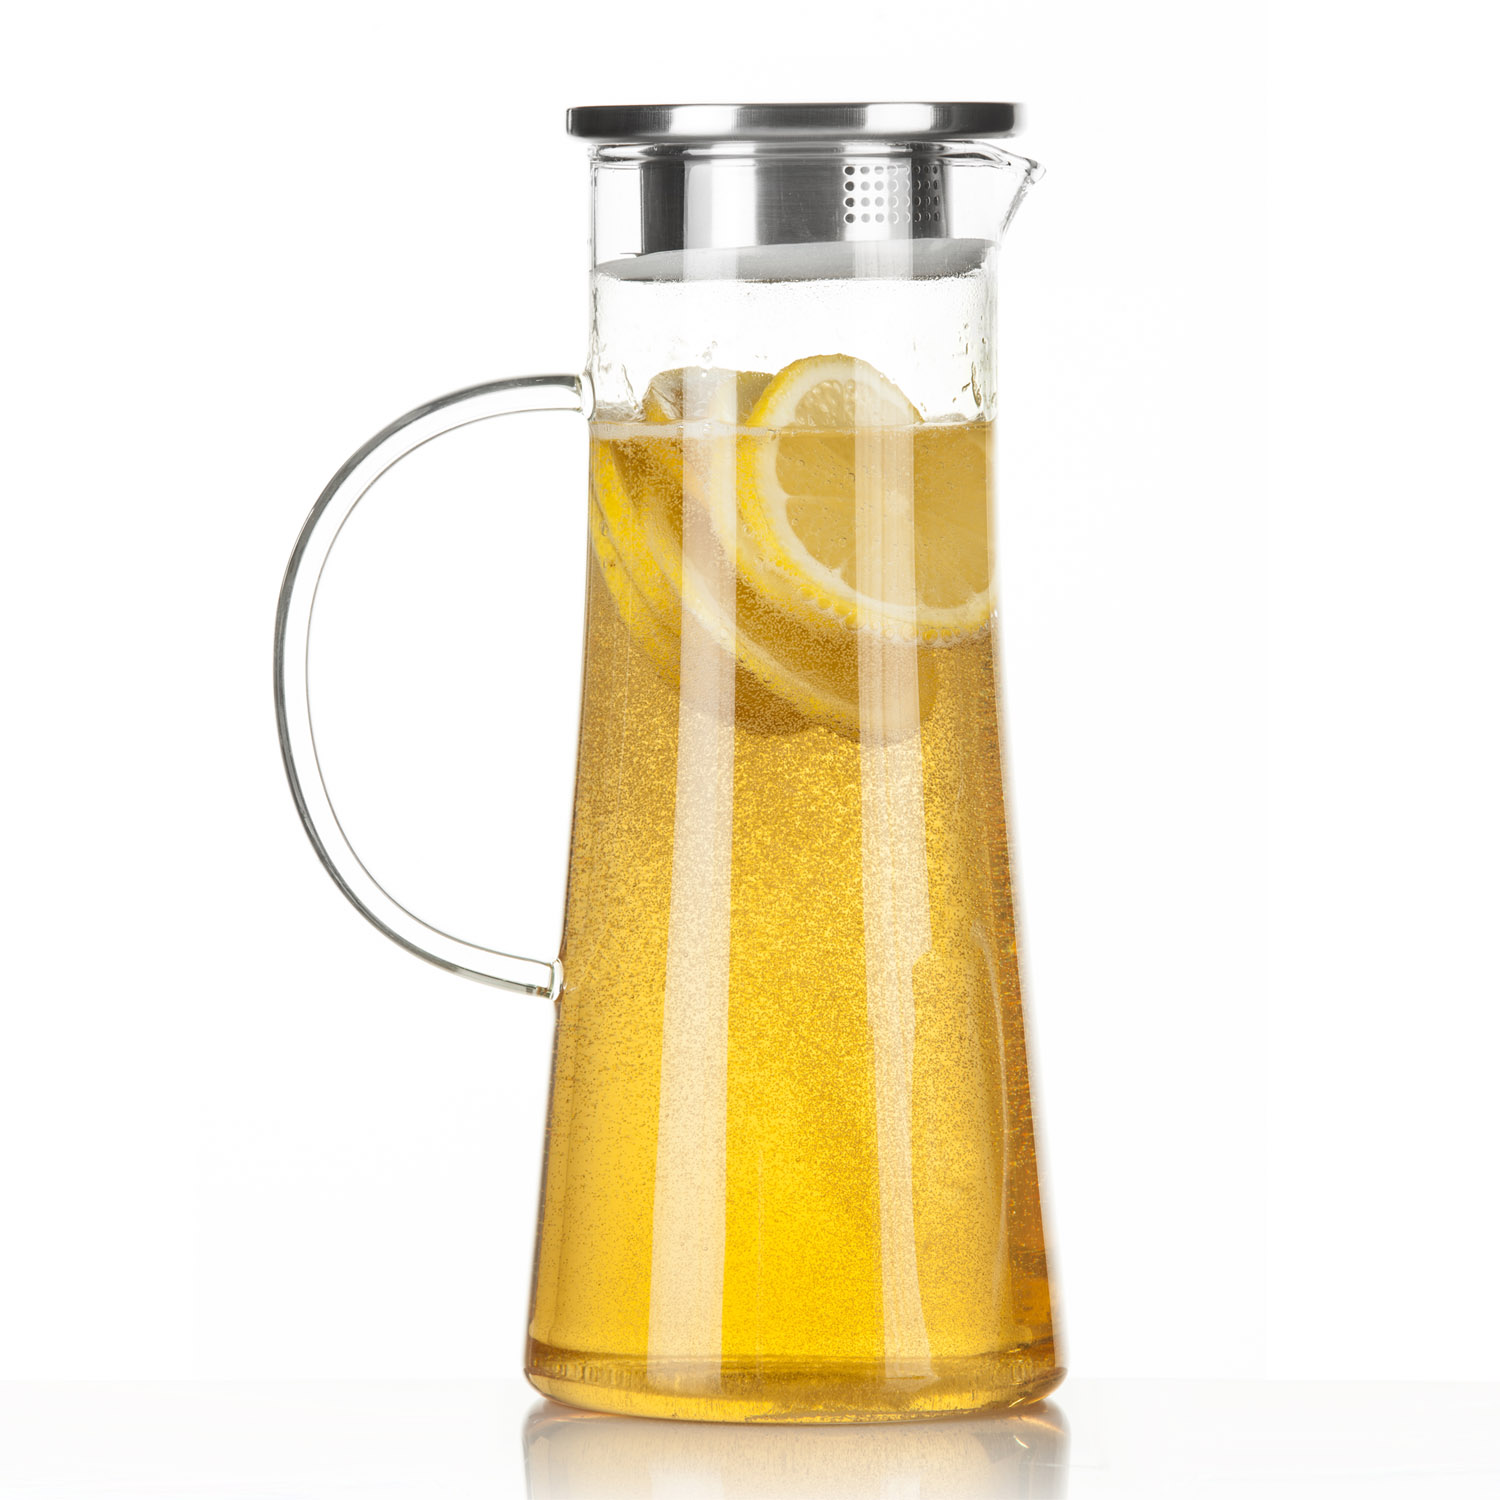 CNNIK Glaskaraffe 1.5 Liter Wasserkrug Hitzebeständig Borosilikatglas Glas Krug mit Natürlicher Bambusdeckel Wasserkaraffe für Kühlschrank Milchsaft Tee Kaffee Limonade 